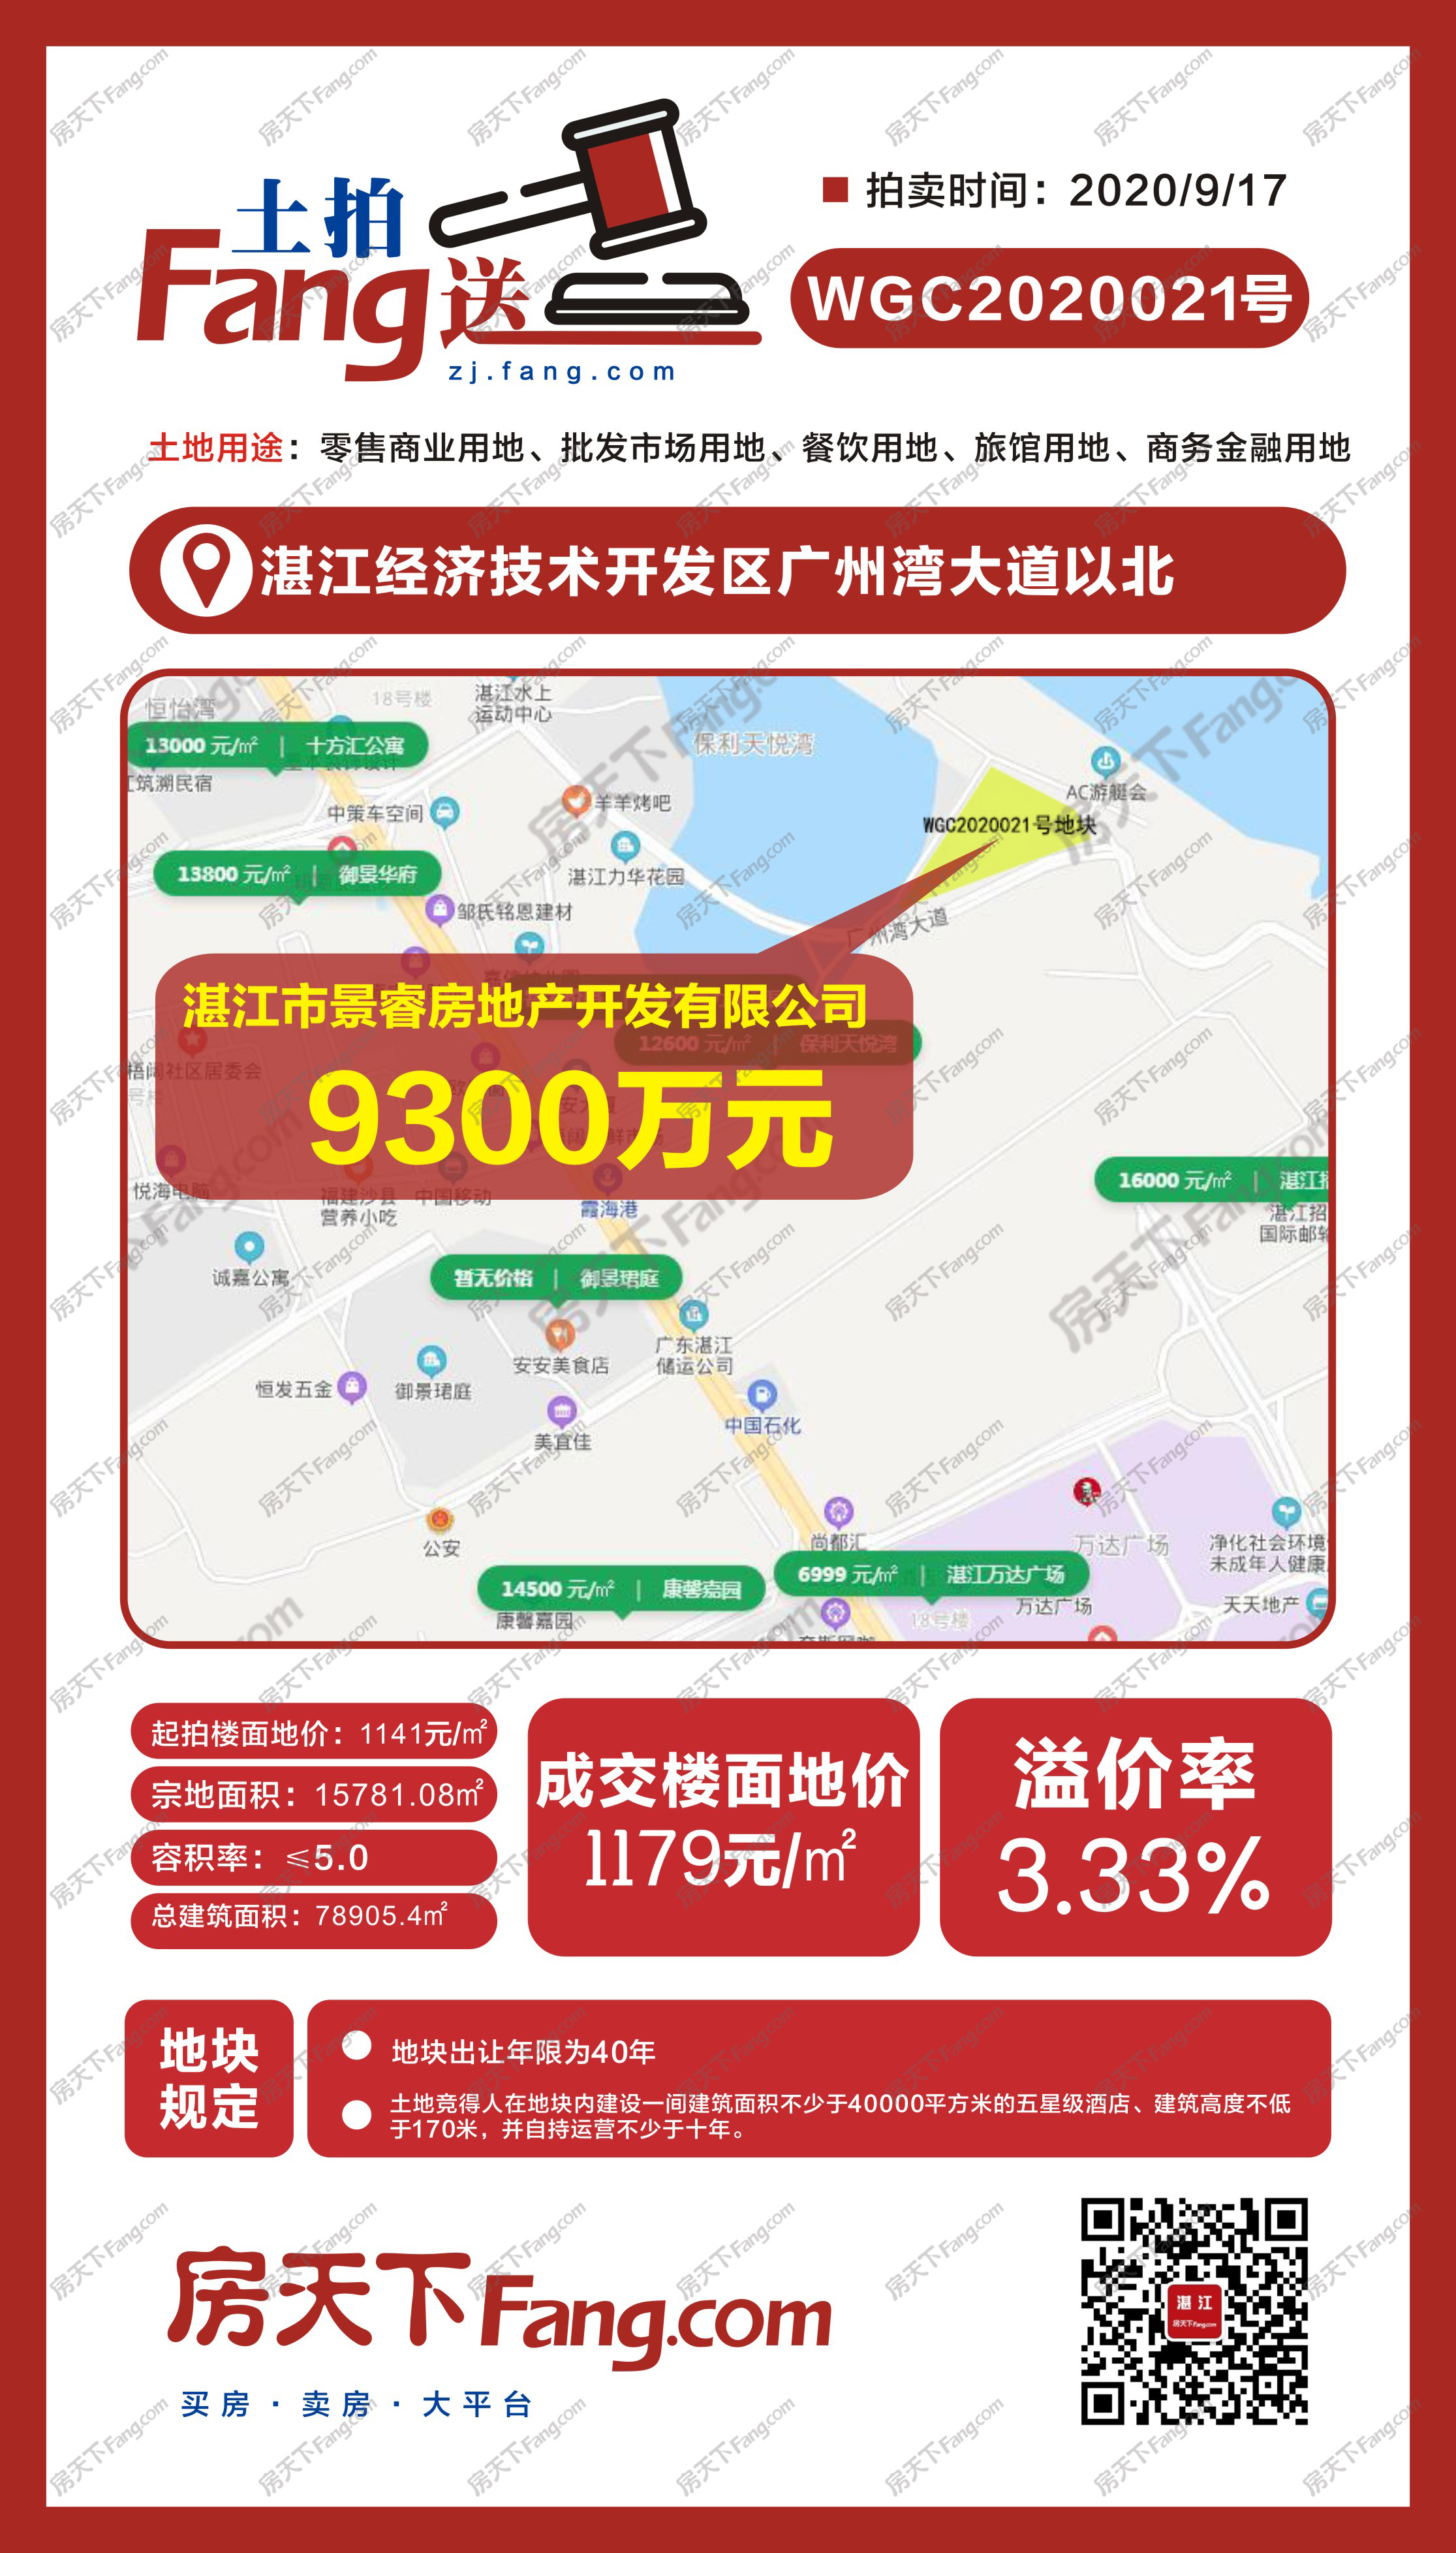 湛江开发区15781.08综合用地成功出让 成交价9300万元